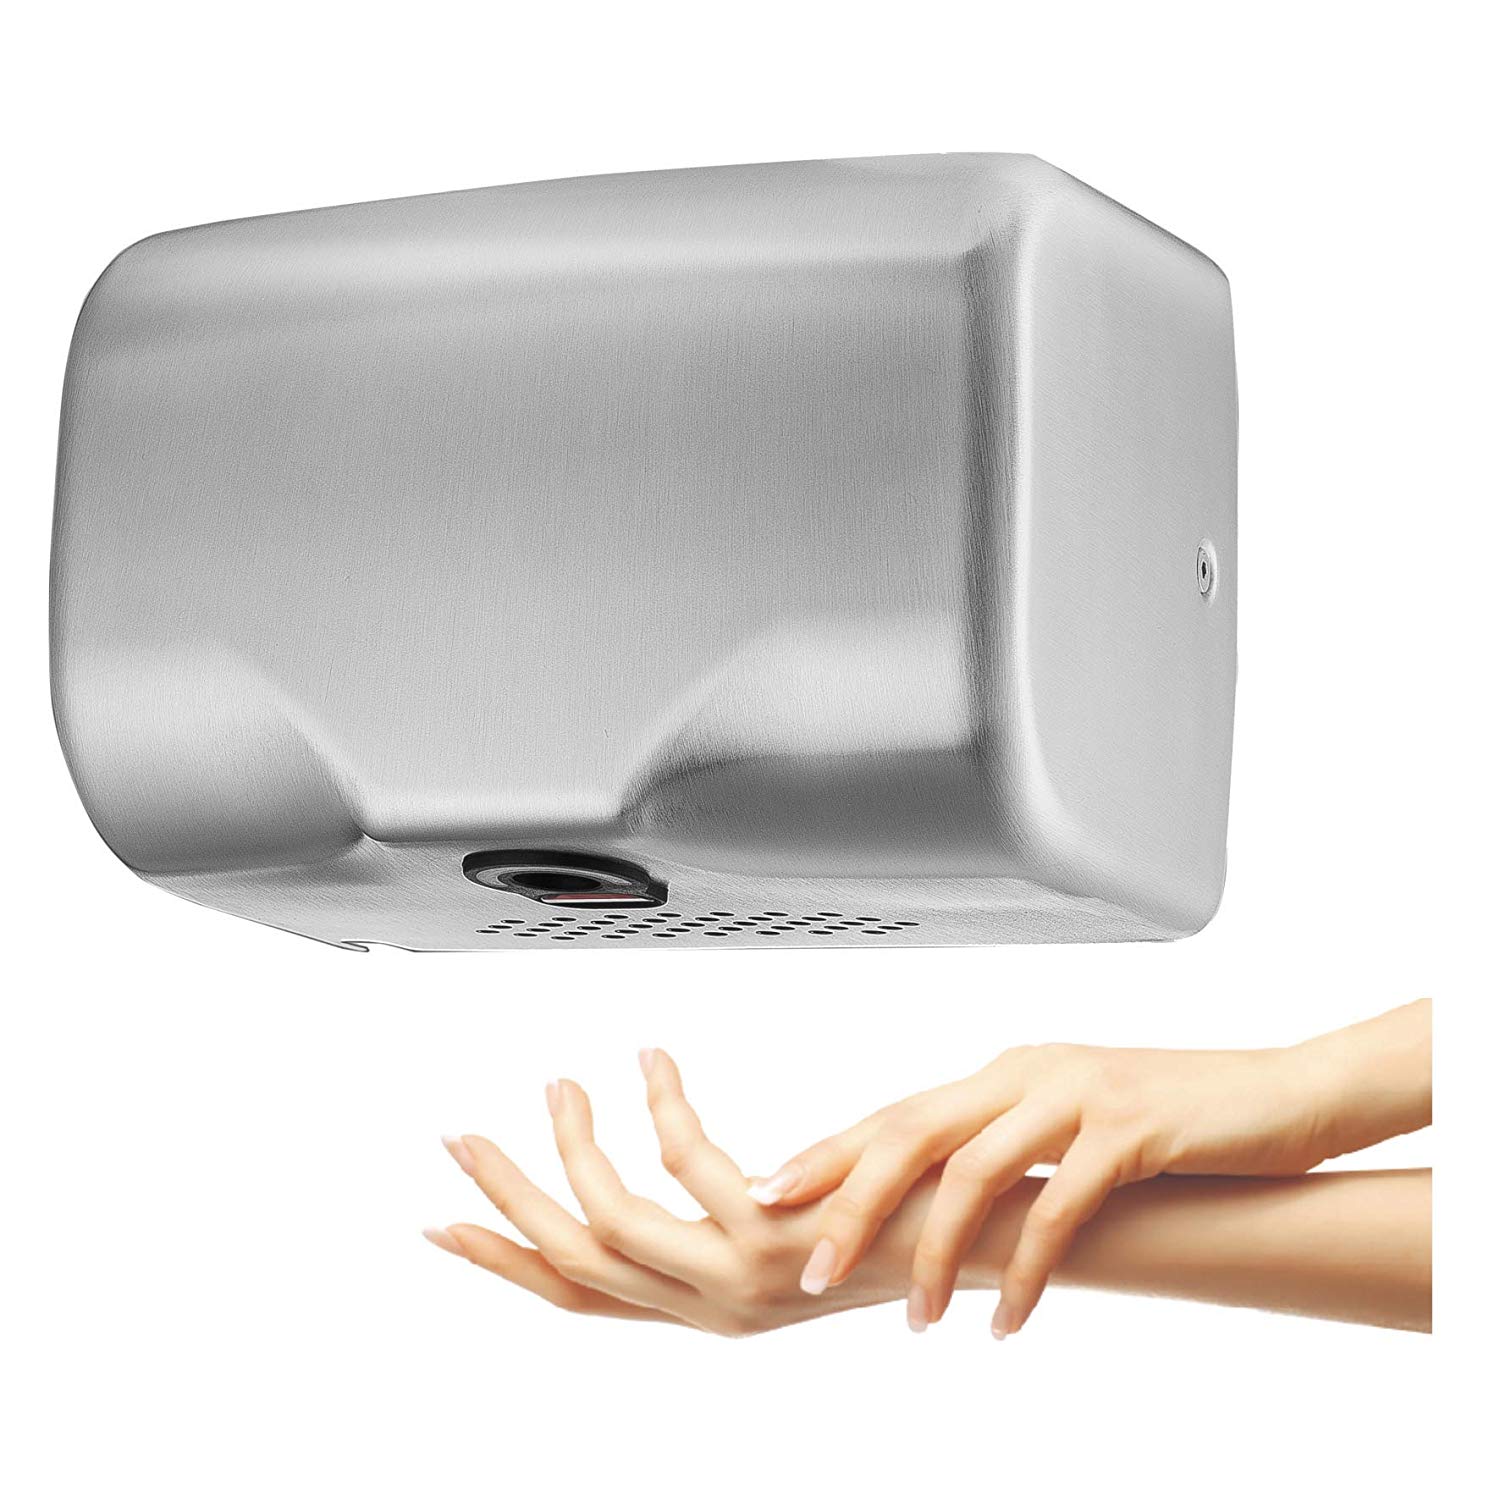 Электрическая сушилка для рук цена. Ergo Automatic hand Dryer. Сушилка для рук. Сушилка для рук погружная. Сушилка для рук электрическая.